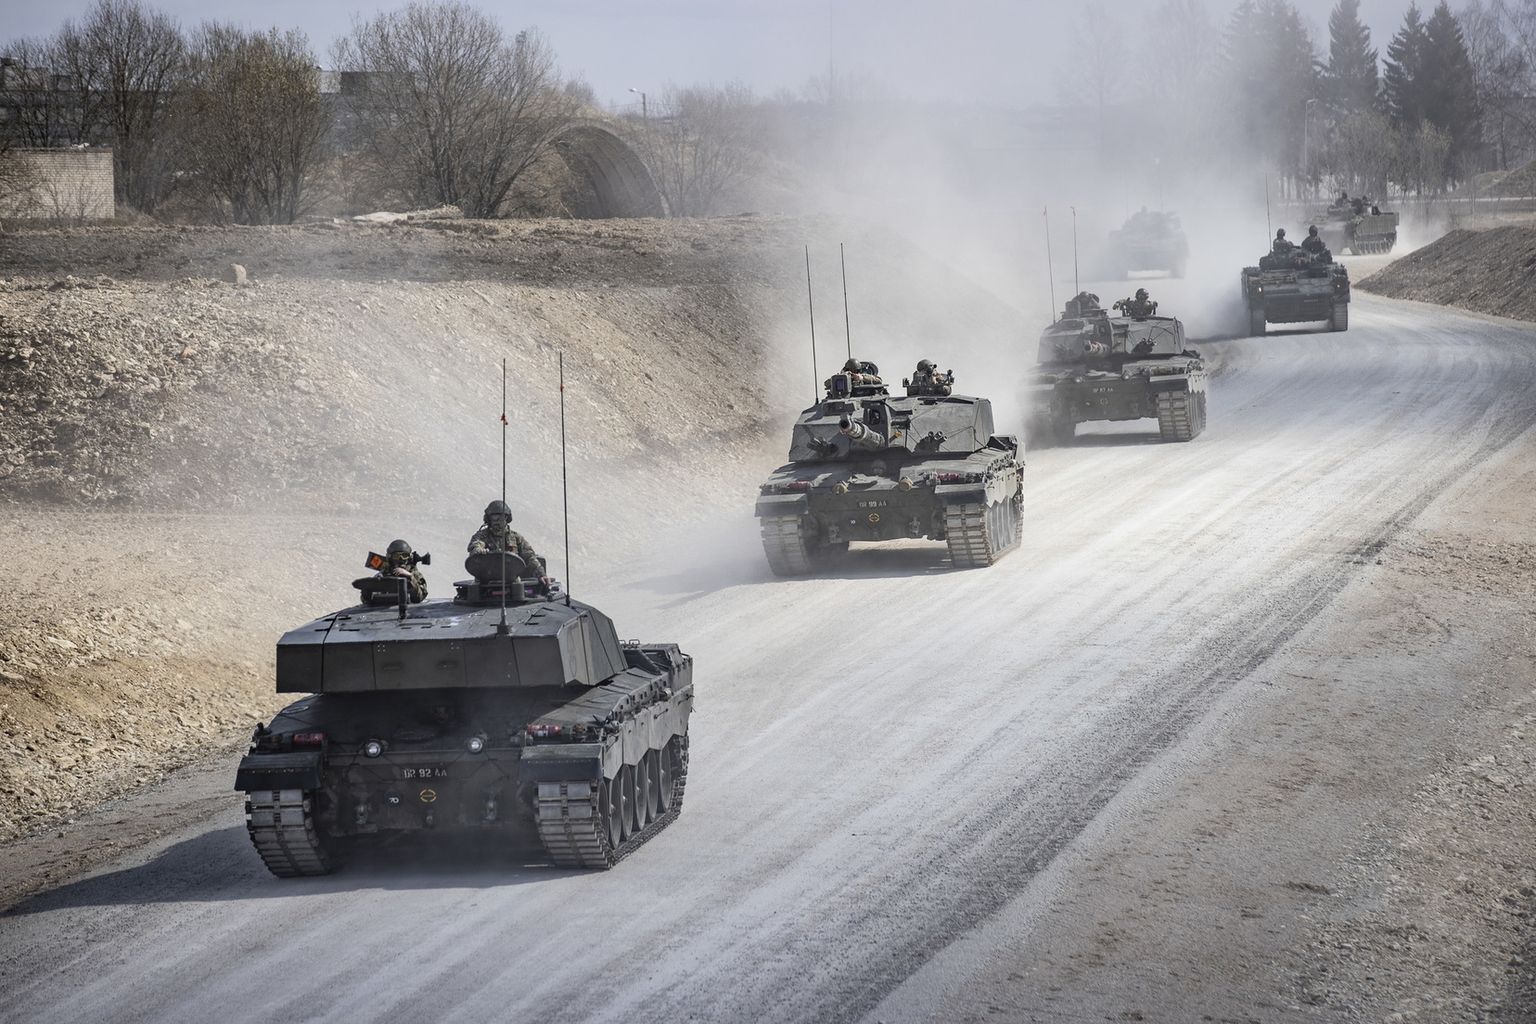 Завтра и послезавтра по дорогам Эстонии пройдут колонны военной техники.